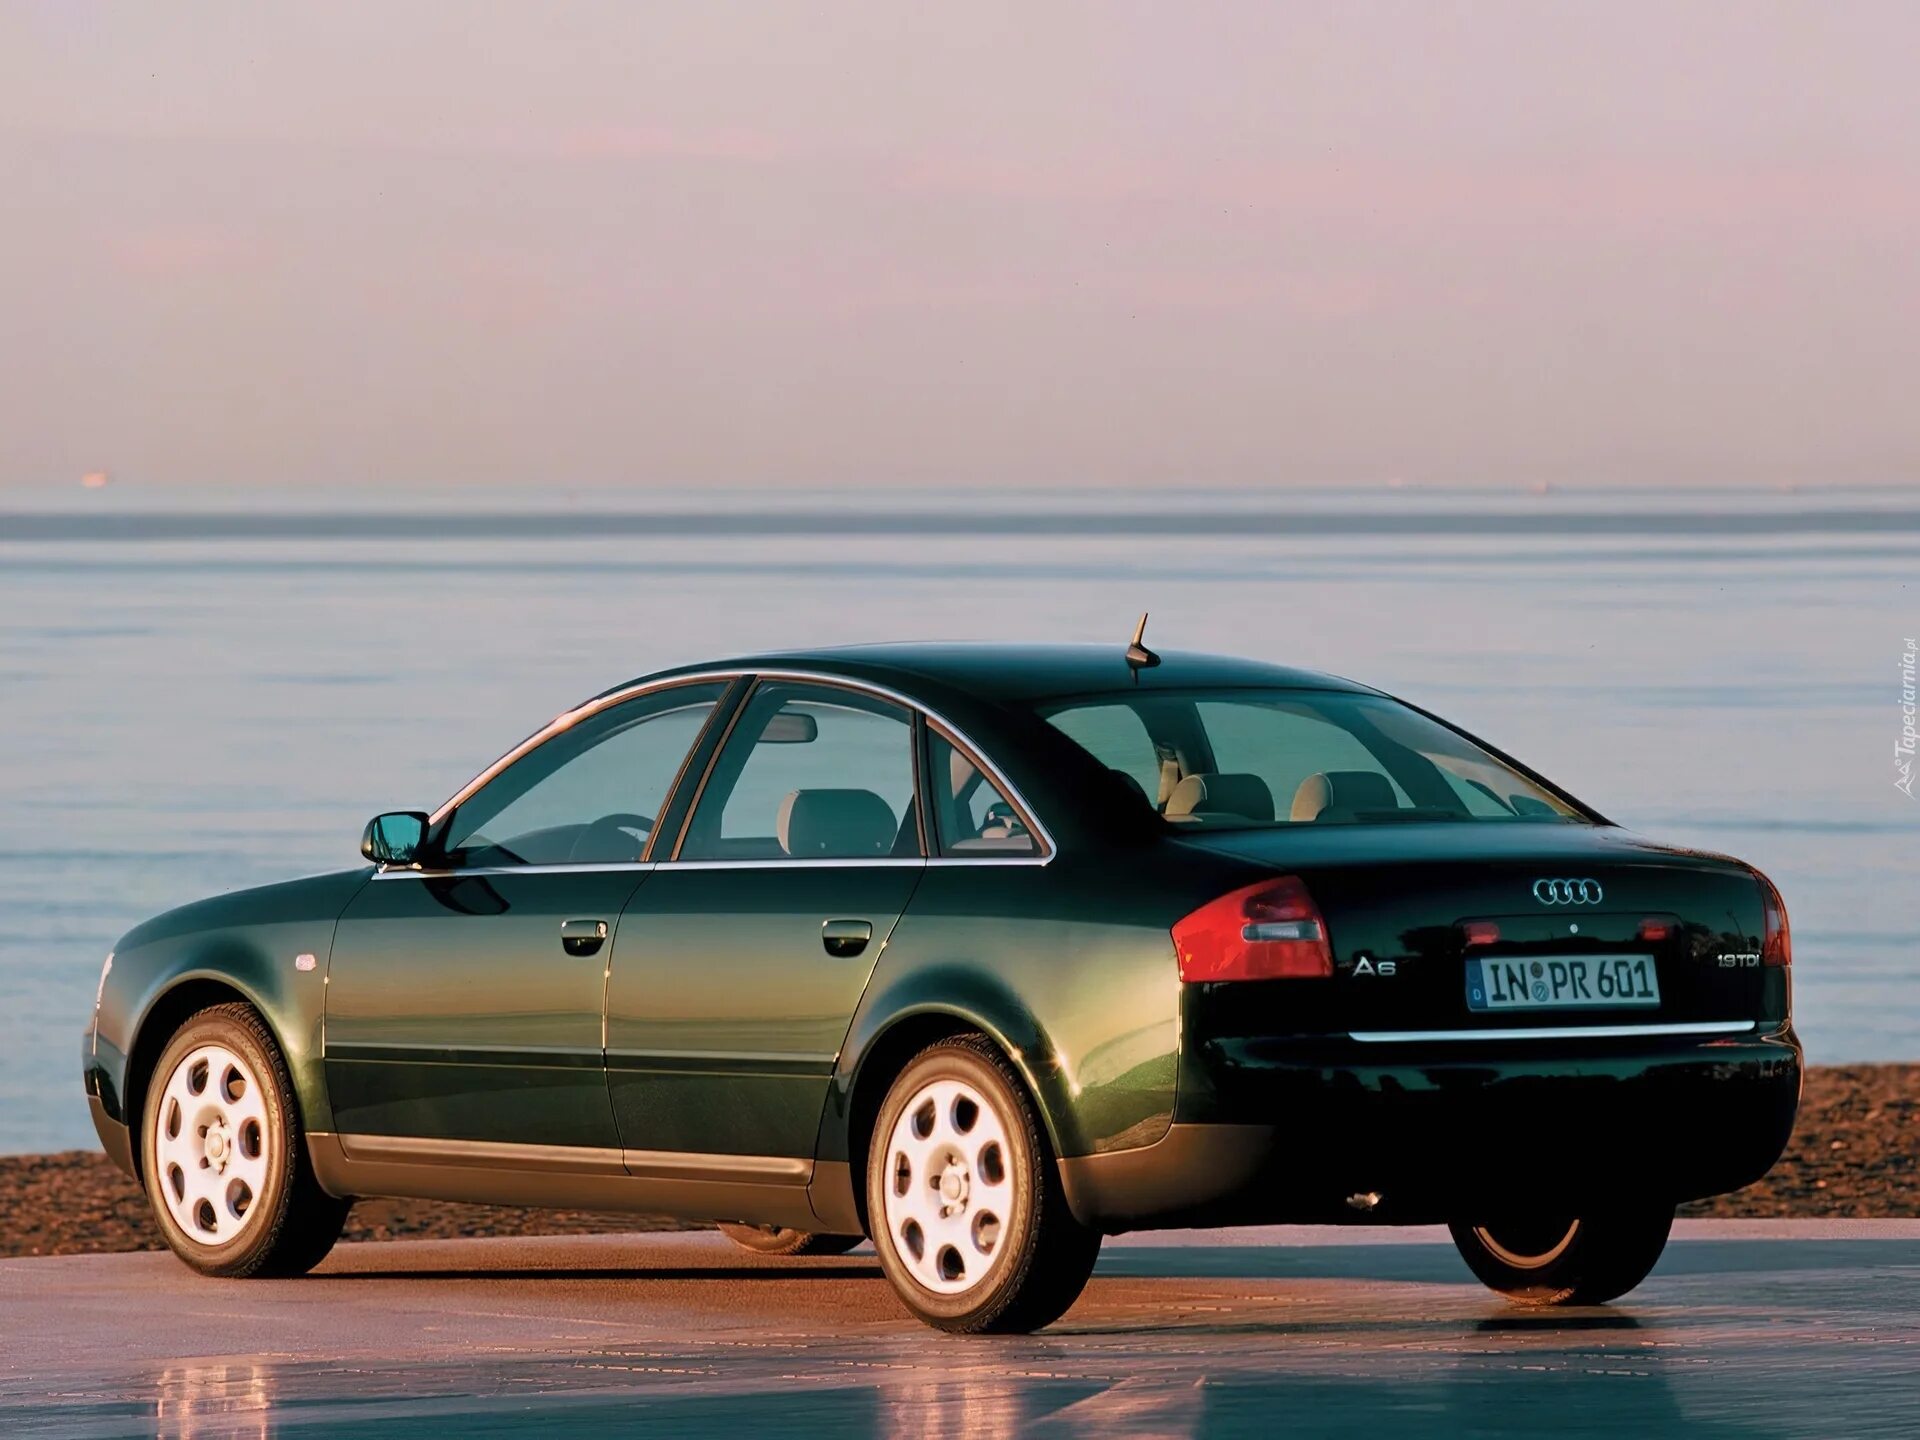 Ауди а6 с5 3.0. Audi a6 c5 2002. Audi a6 2002 седан. Audi a6 1997. Audi a6 c5 1997.